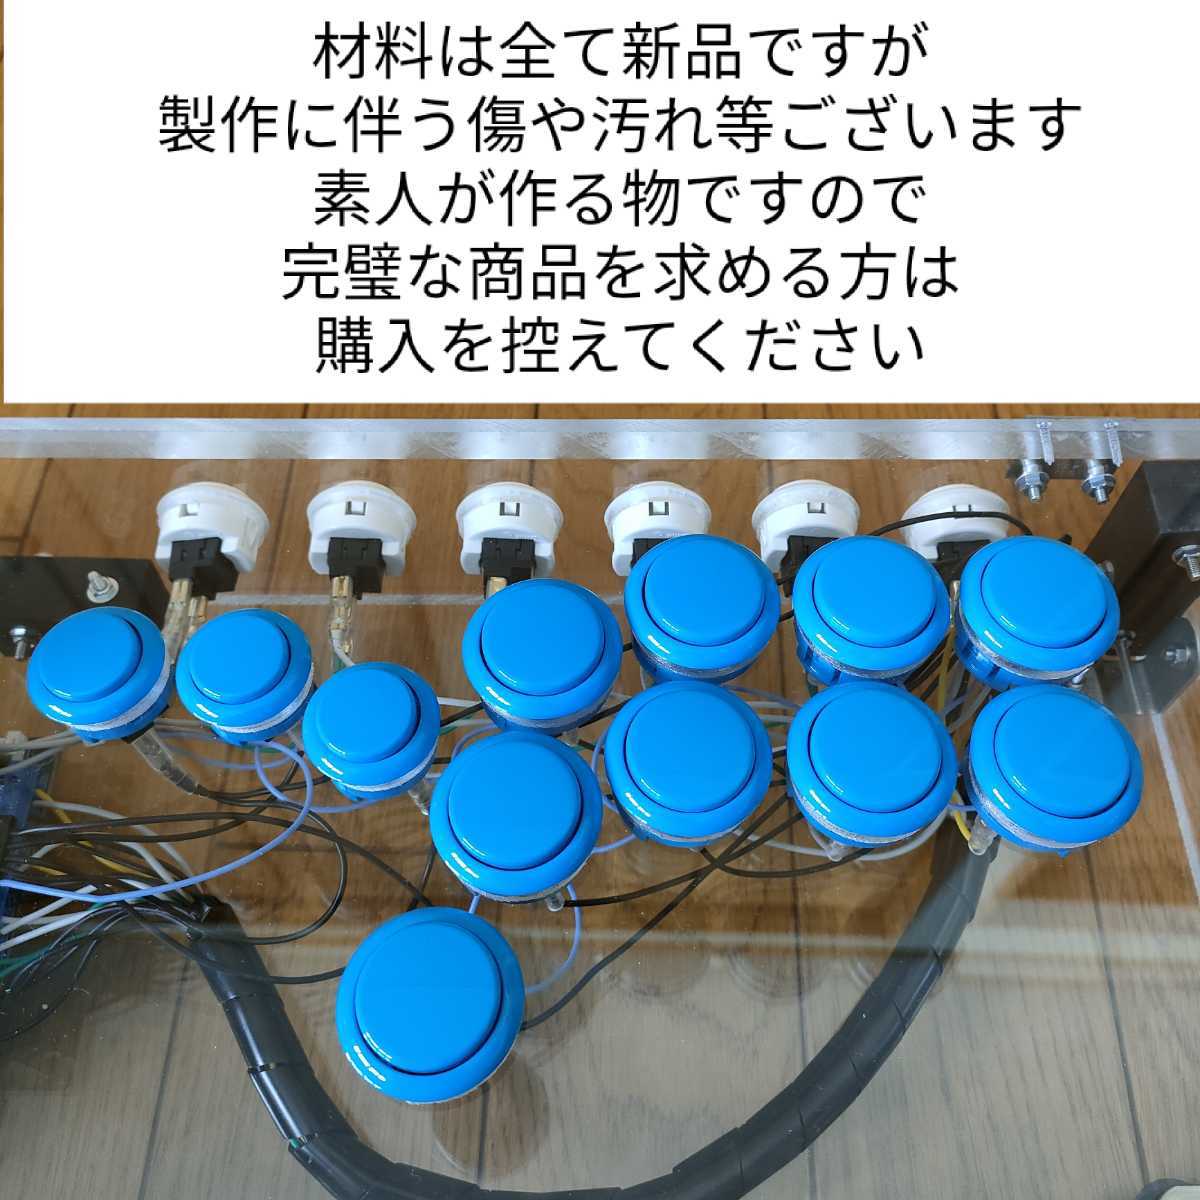 hitbox アケコン ヒットボックス レバーレス コントローラー PS4 